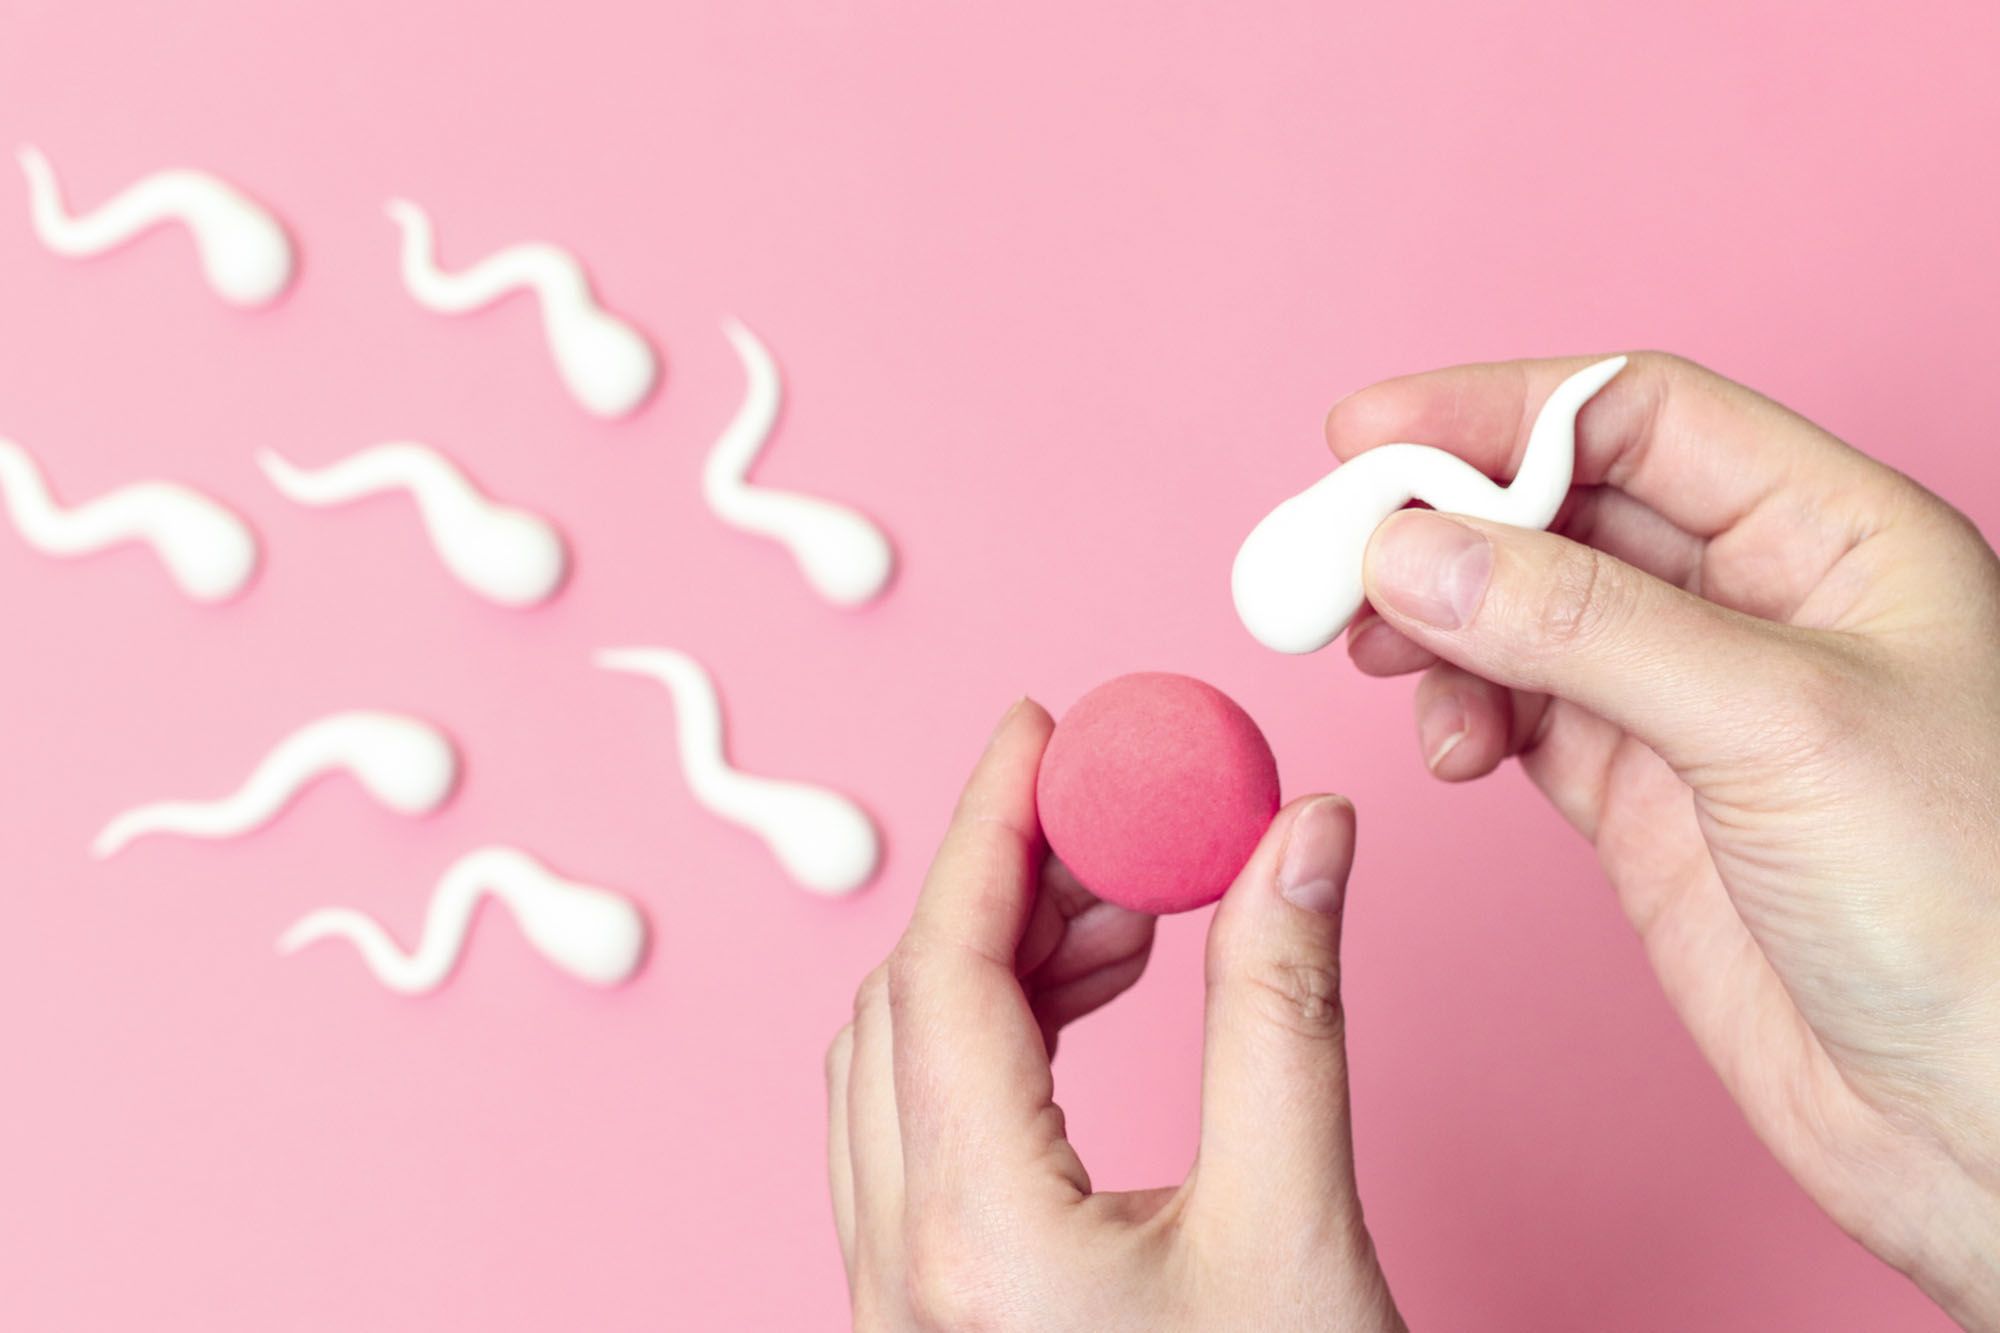 Spermien aus Gummi, eine wird an eine "Eizelle" gehalten